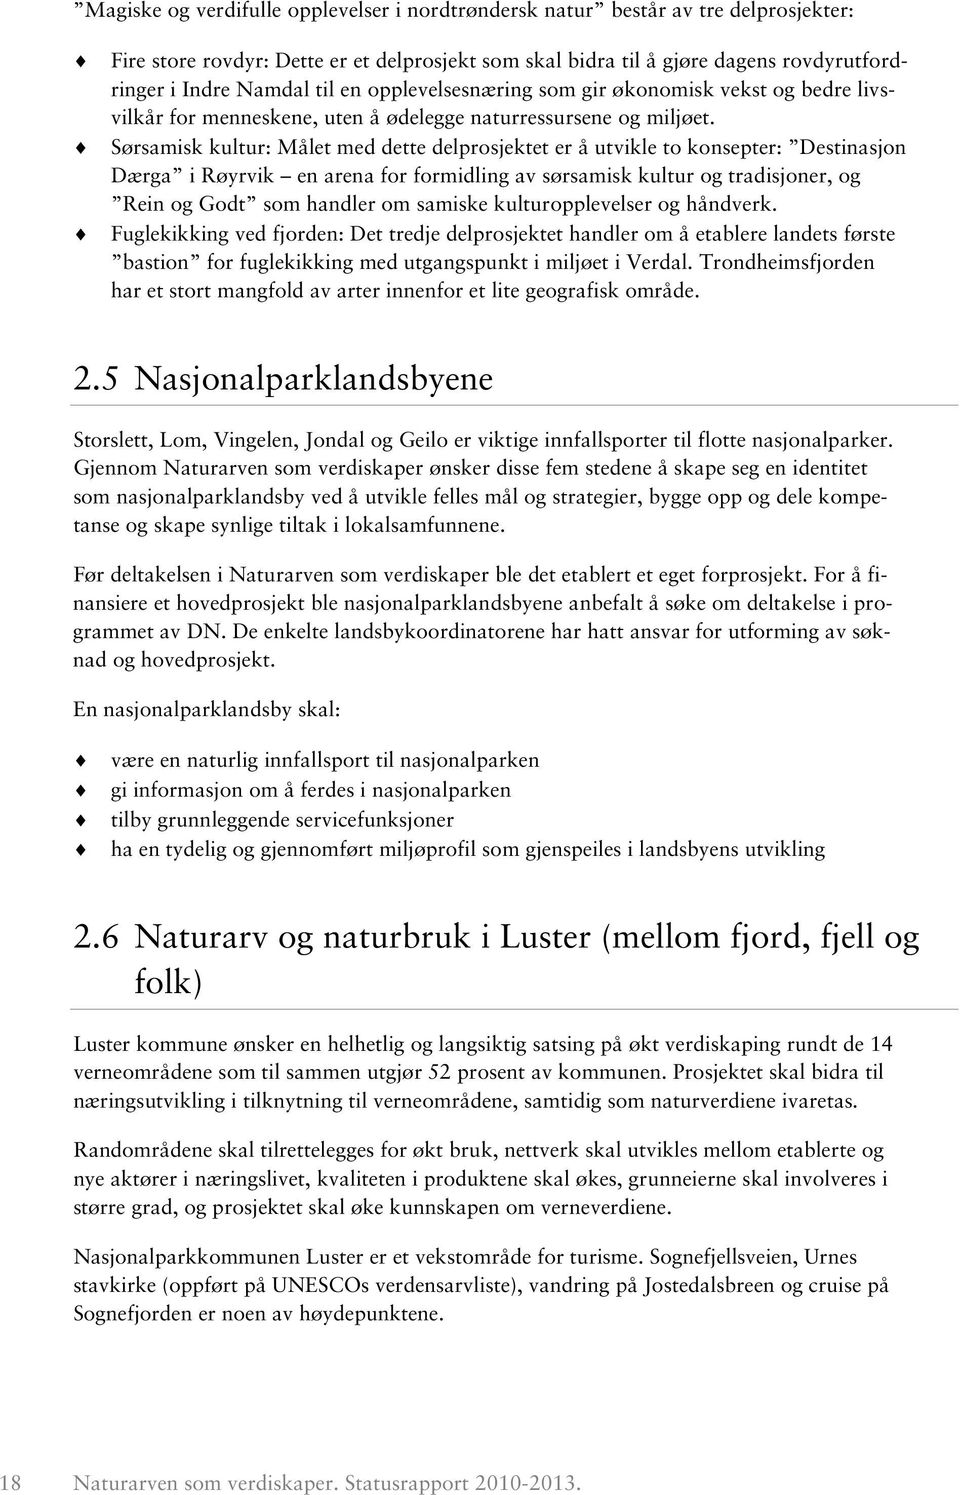 Sørsamisk kultur: Målet med dette delprosjektet er å utvikle to konsepter: Destinasjon Dærga i Røyrvik en arena for formidling av sørsamisk kultur og tradisjoner, og Rein og Godt som handler om